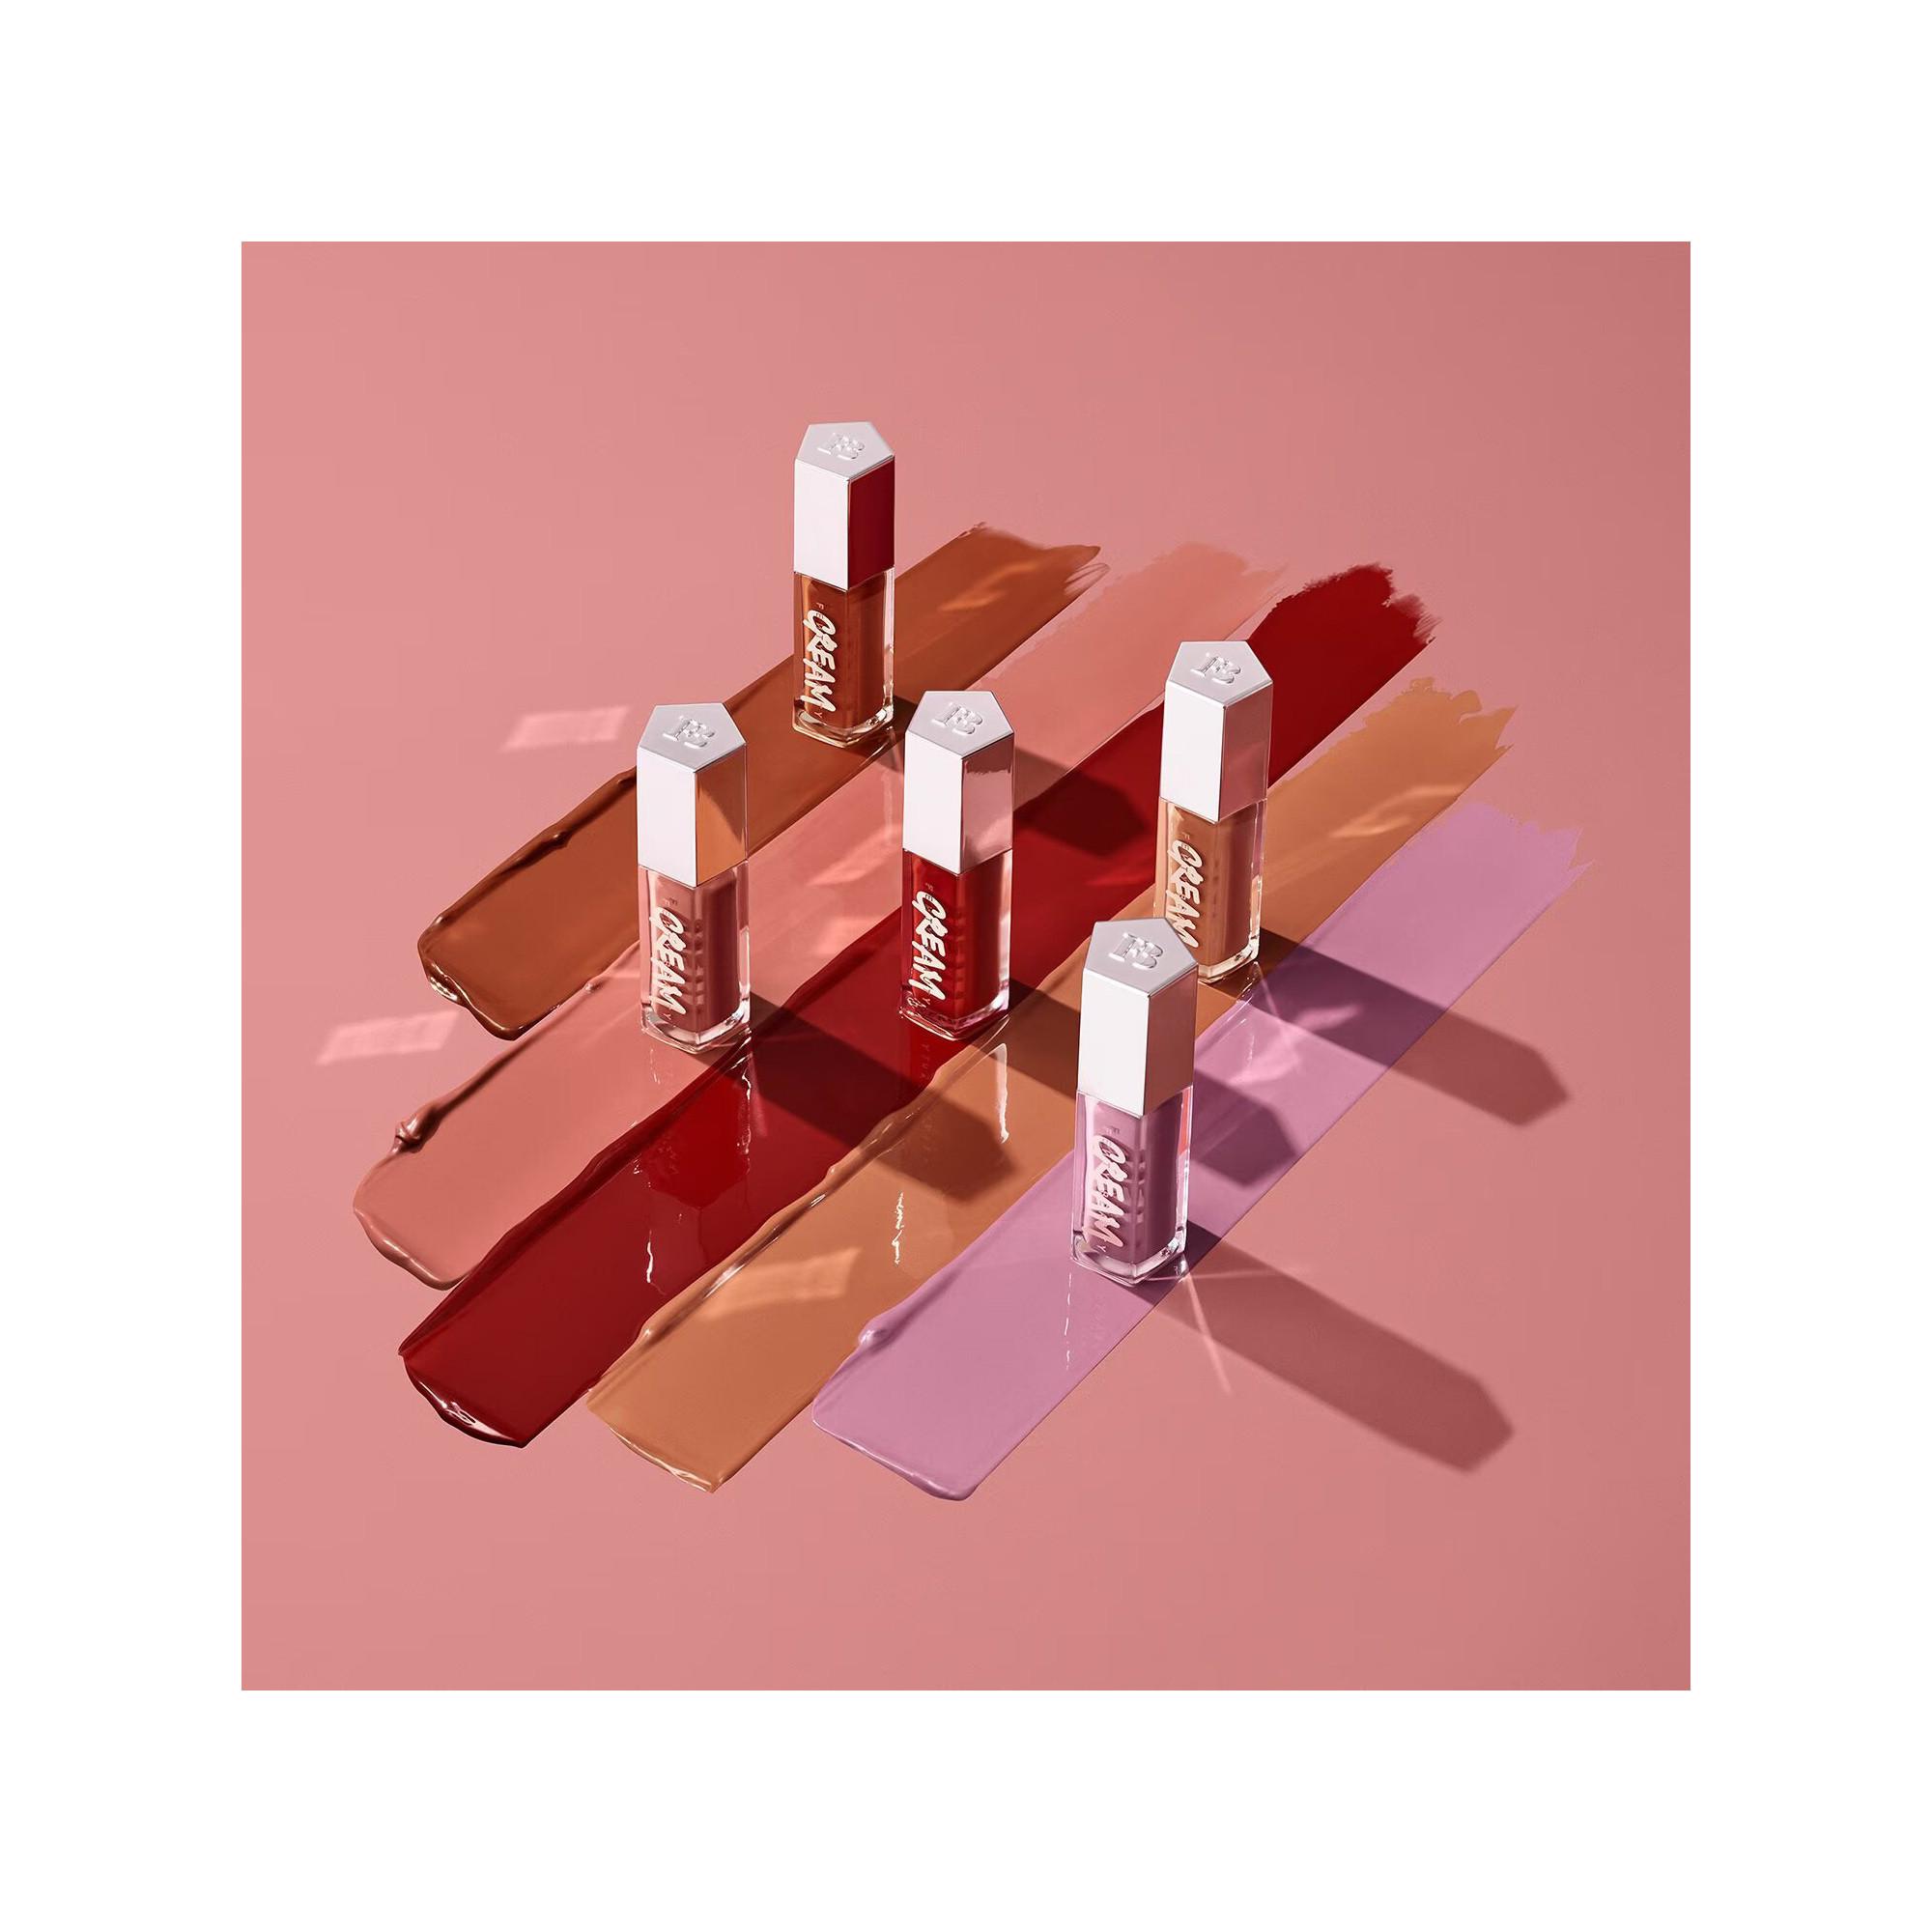 Fenty Beauty By Rihanna Gloss Bomb Cream Lippenlack Intensive Farbe 